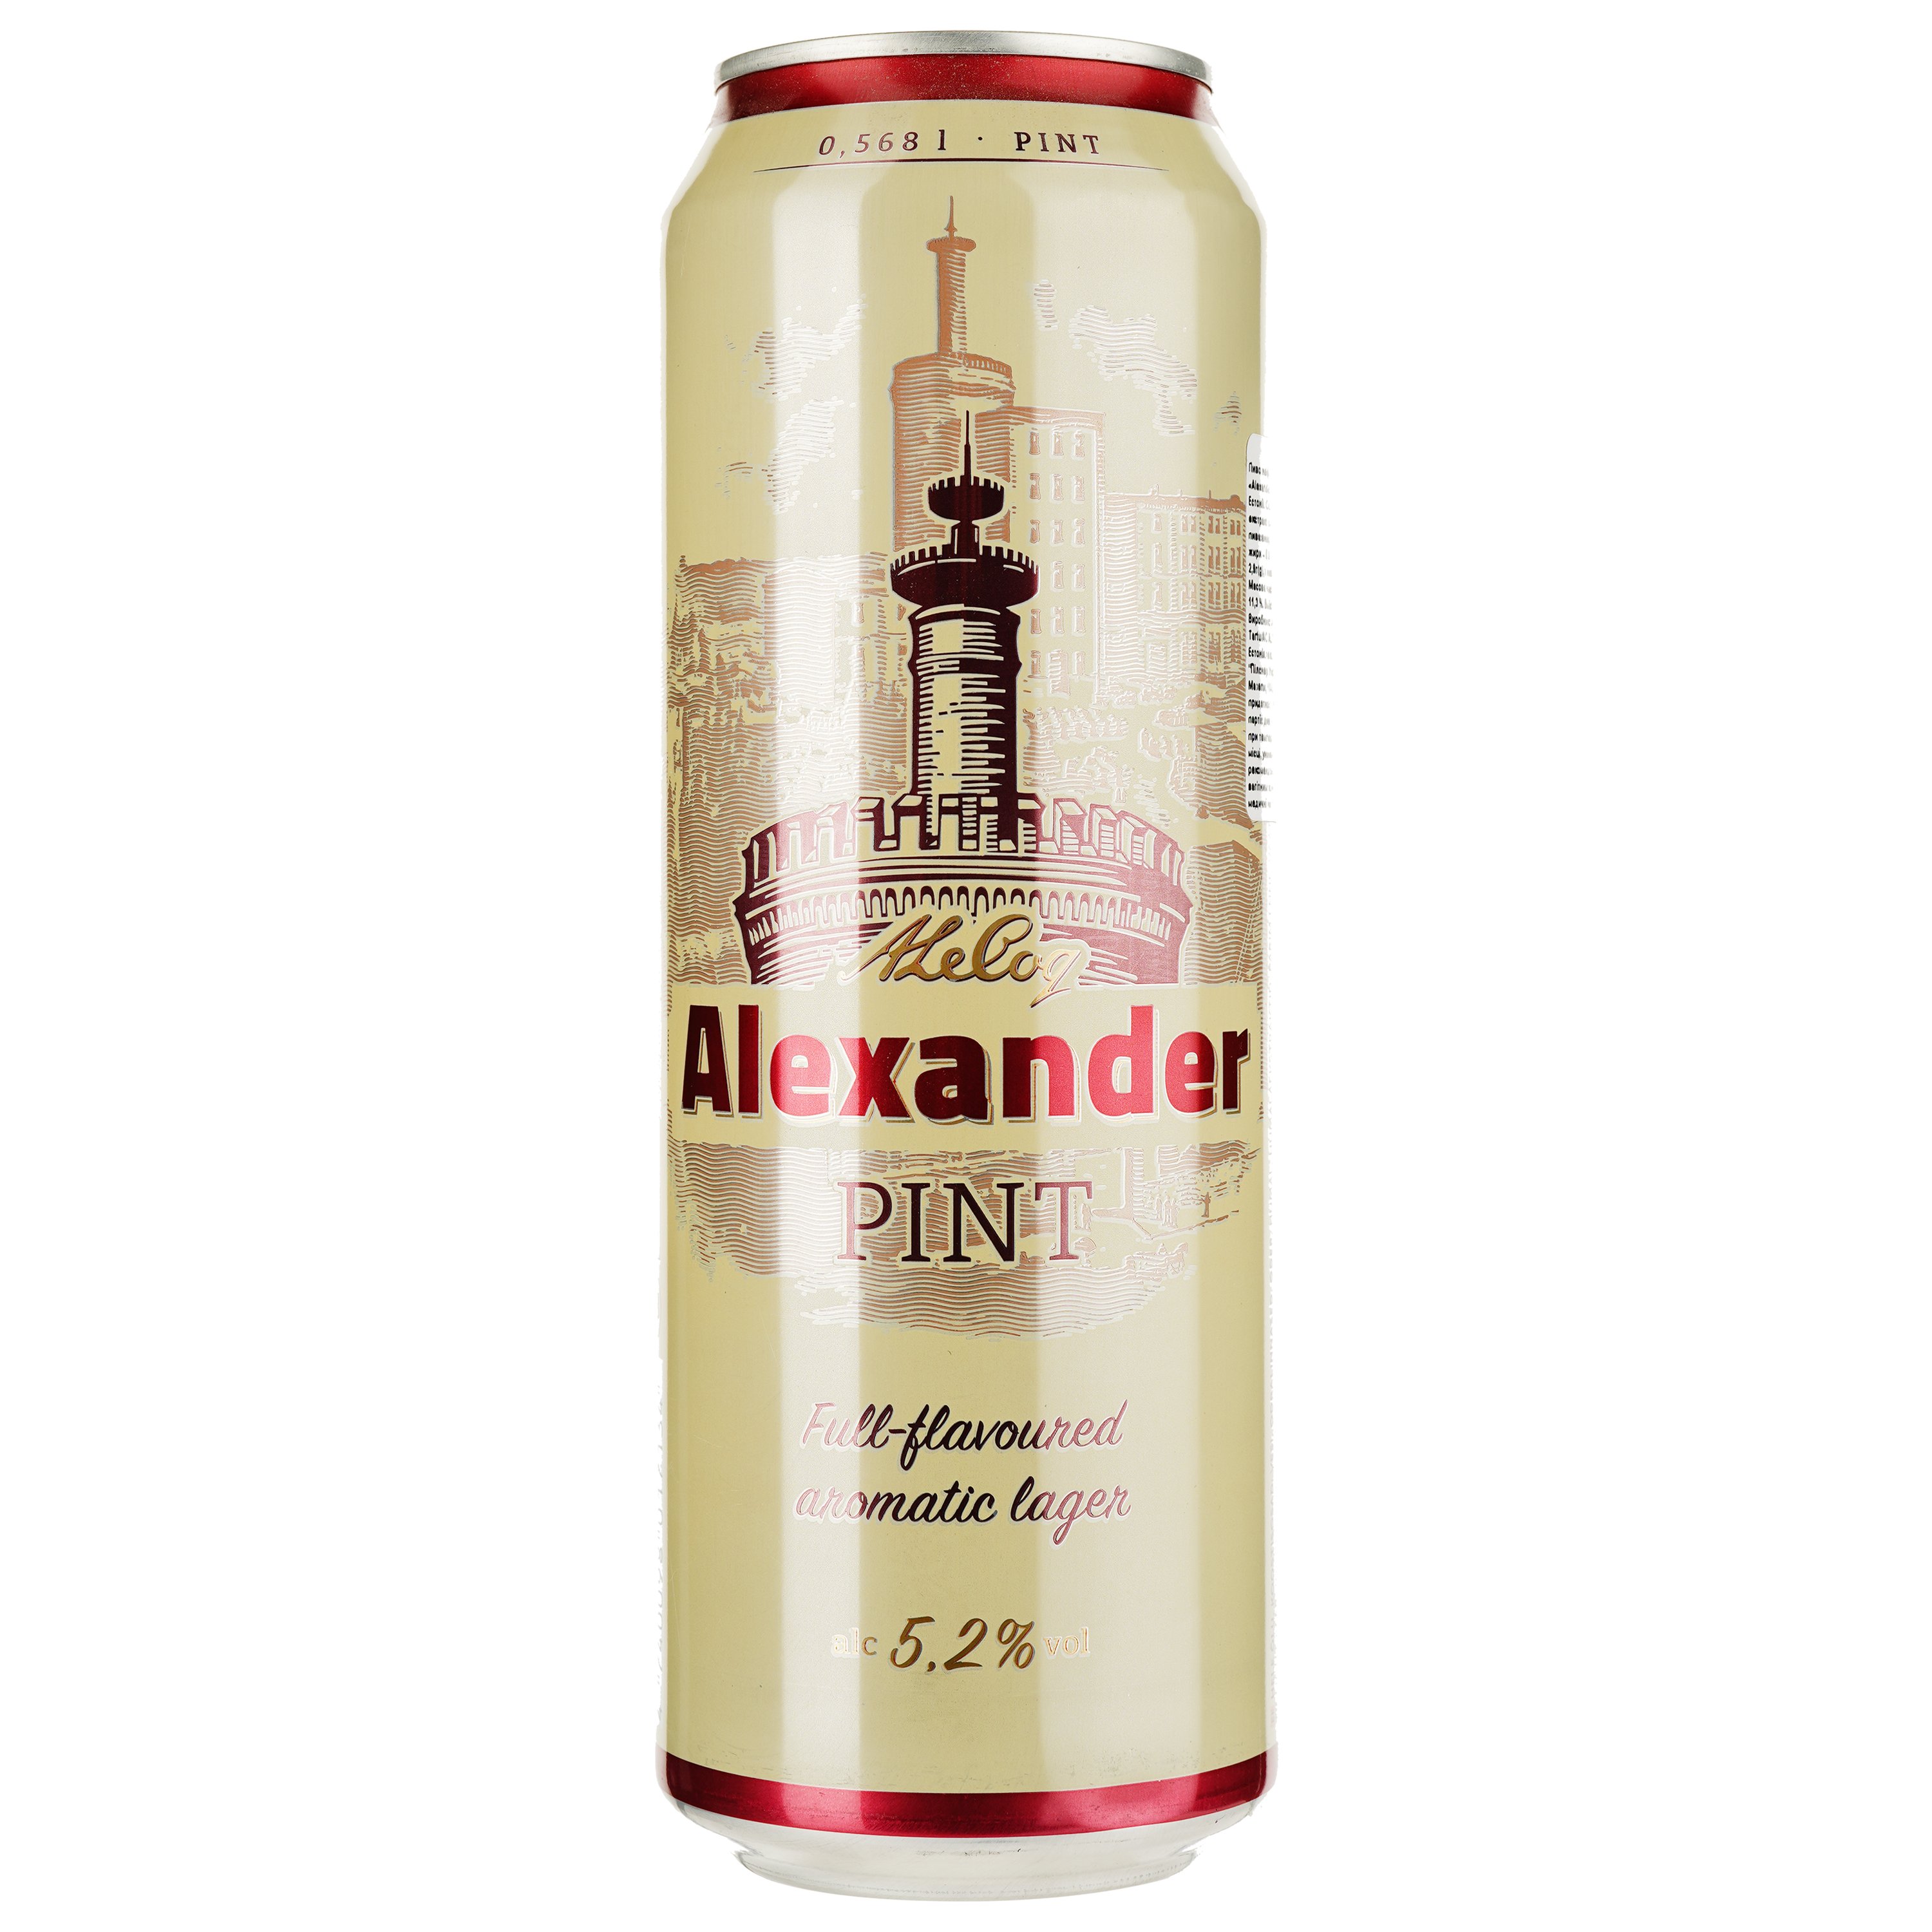 Пиво A. Le Coq Alexander, світле, фільтроване, 5,2%, з/б, 0,568 л - фото 1